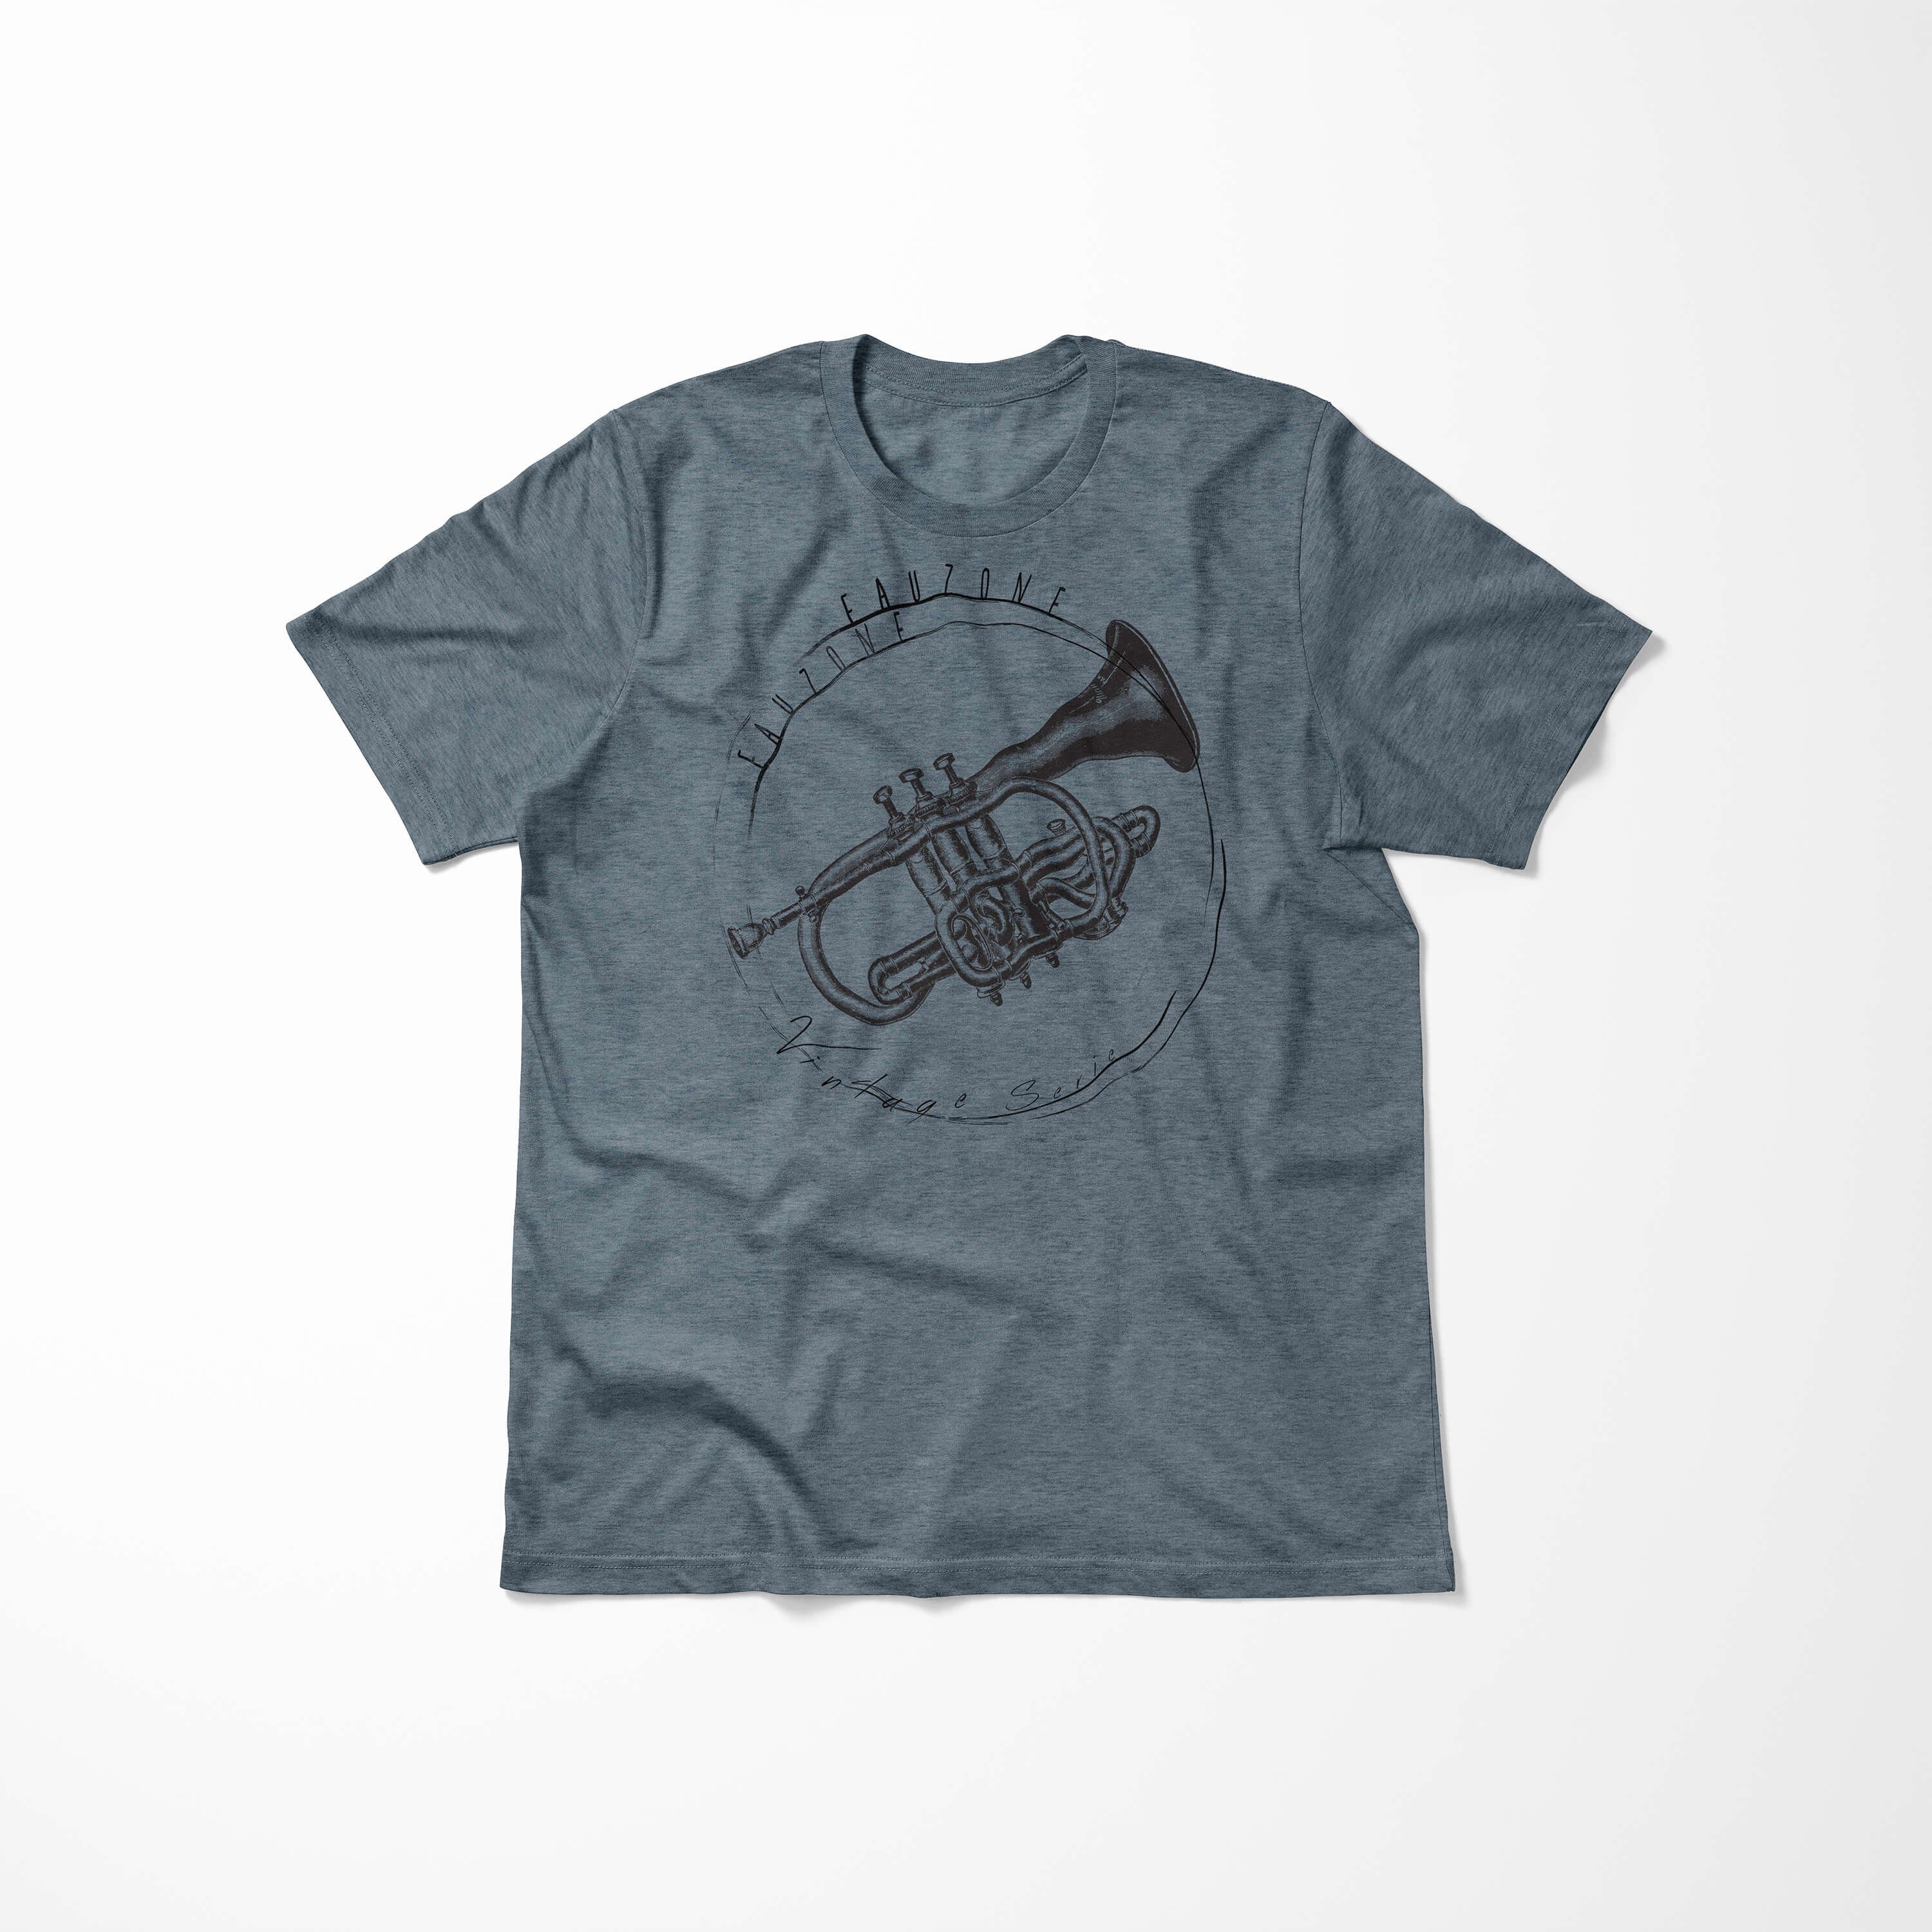 T-Shirt Art Herren T-Shirt Indigo Vintage Sinus Trompete